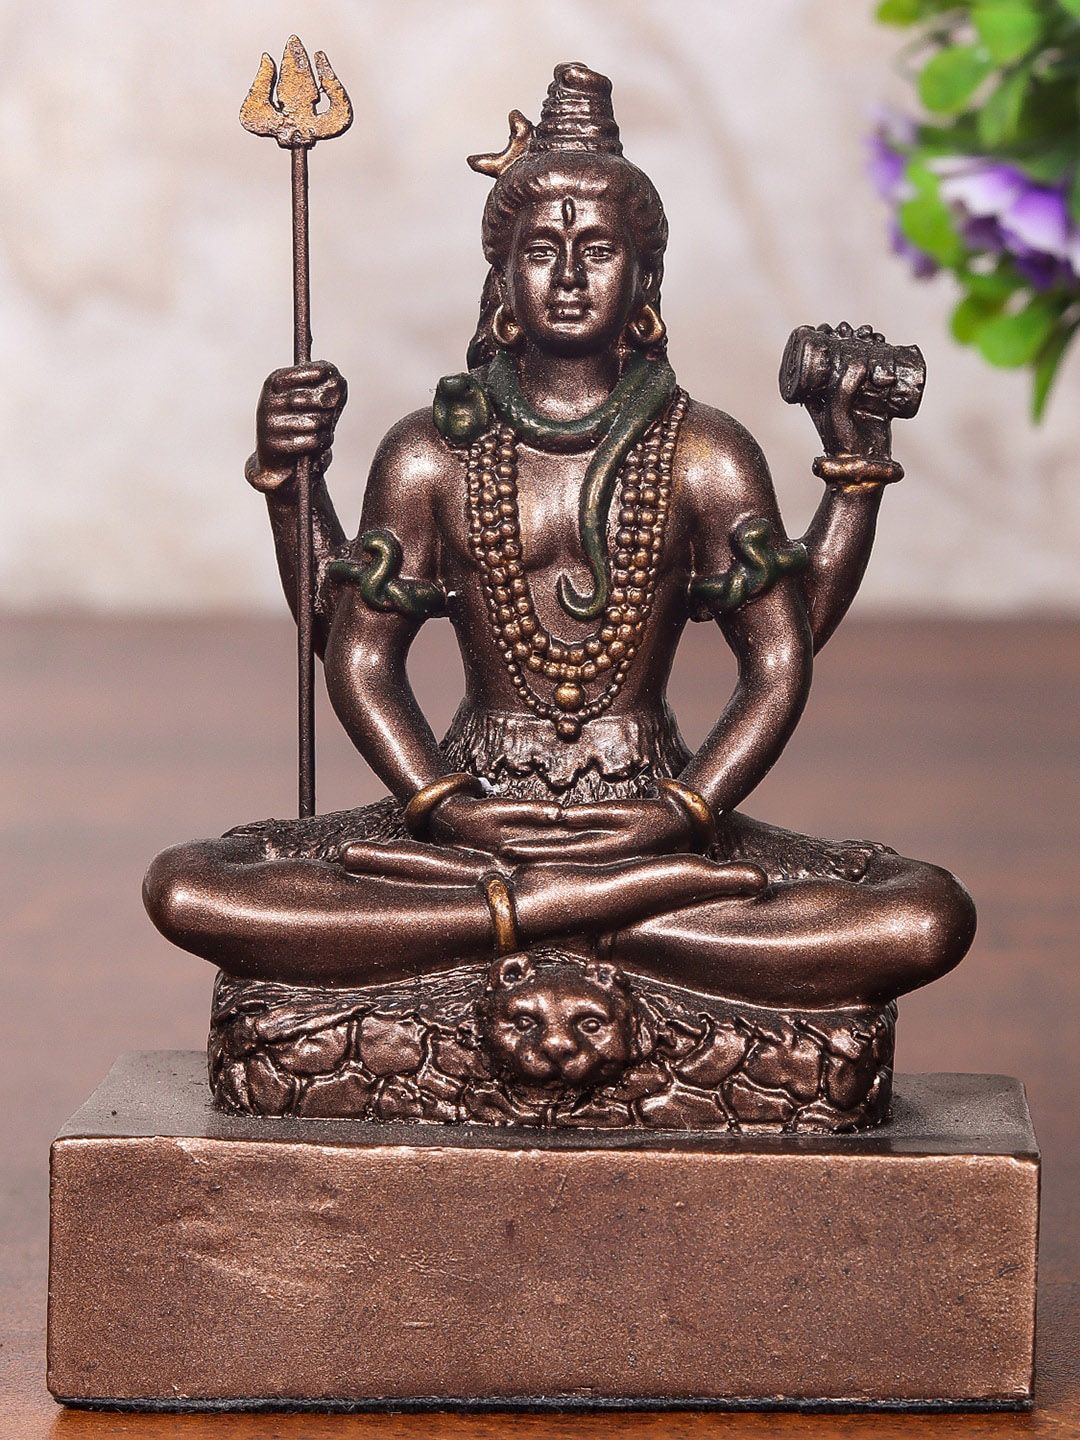 StatueStudio Mini Shiva Idol Showpiece Price in India